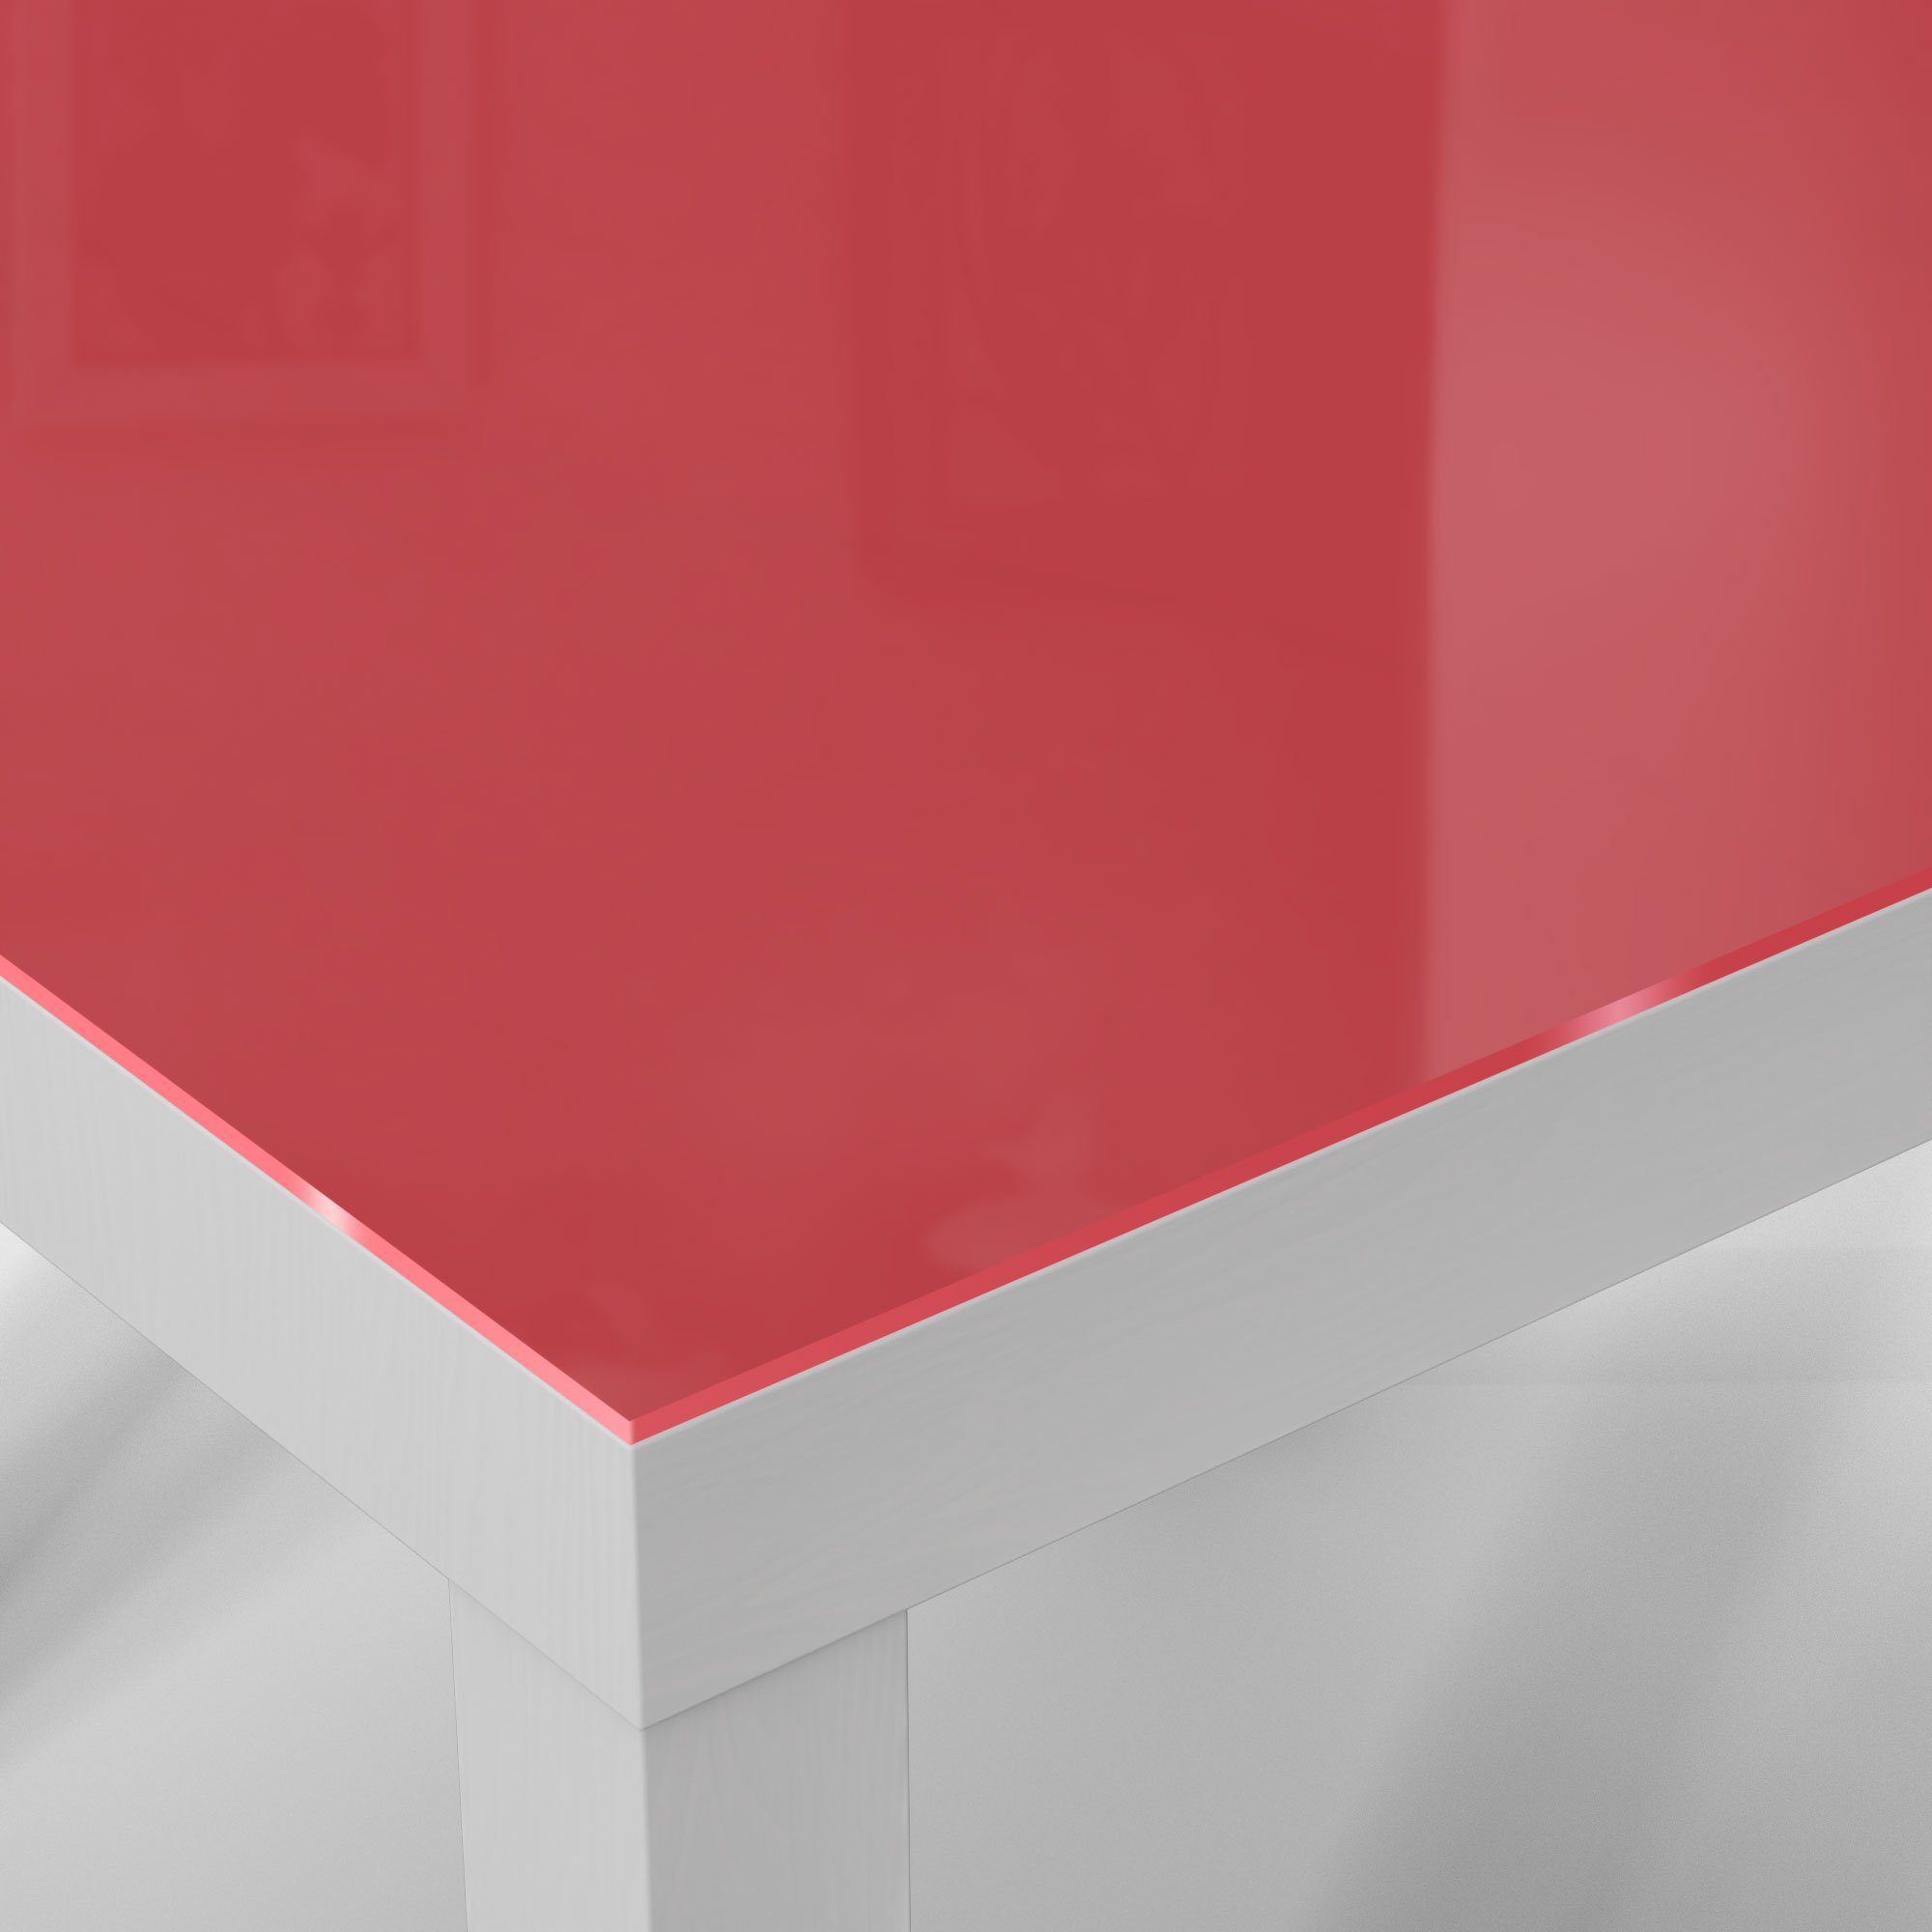 Glastisch - 'Unifarben Couchtisch Glas Beistelltisch modern Rot', DEQORI Weiß